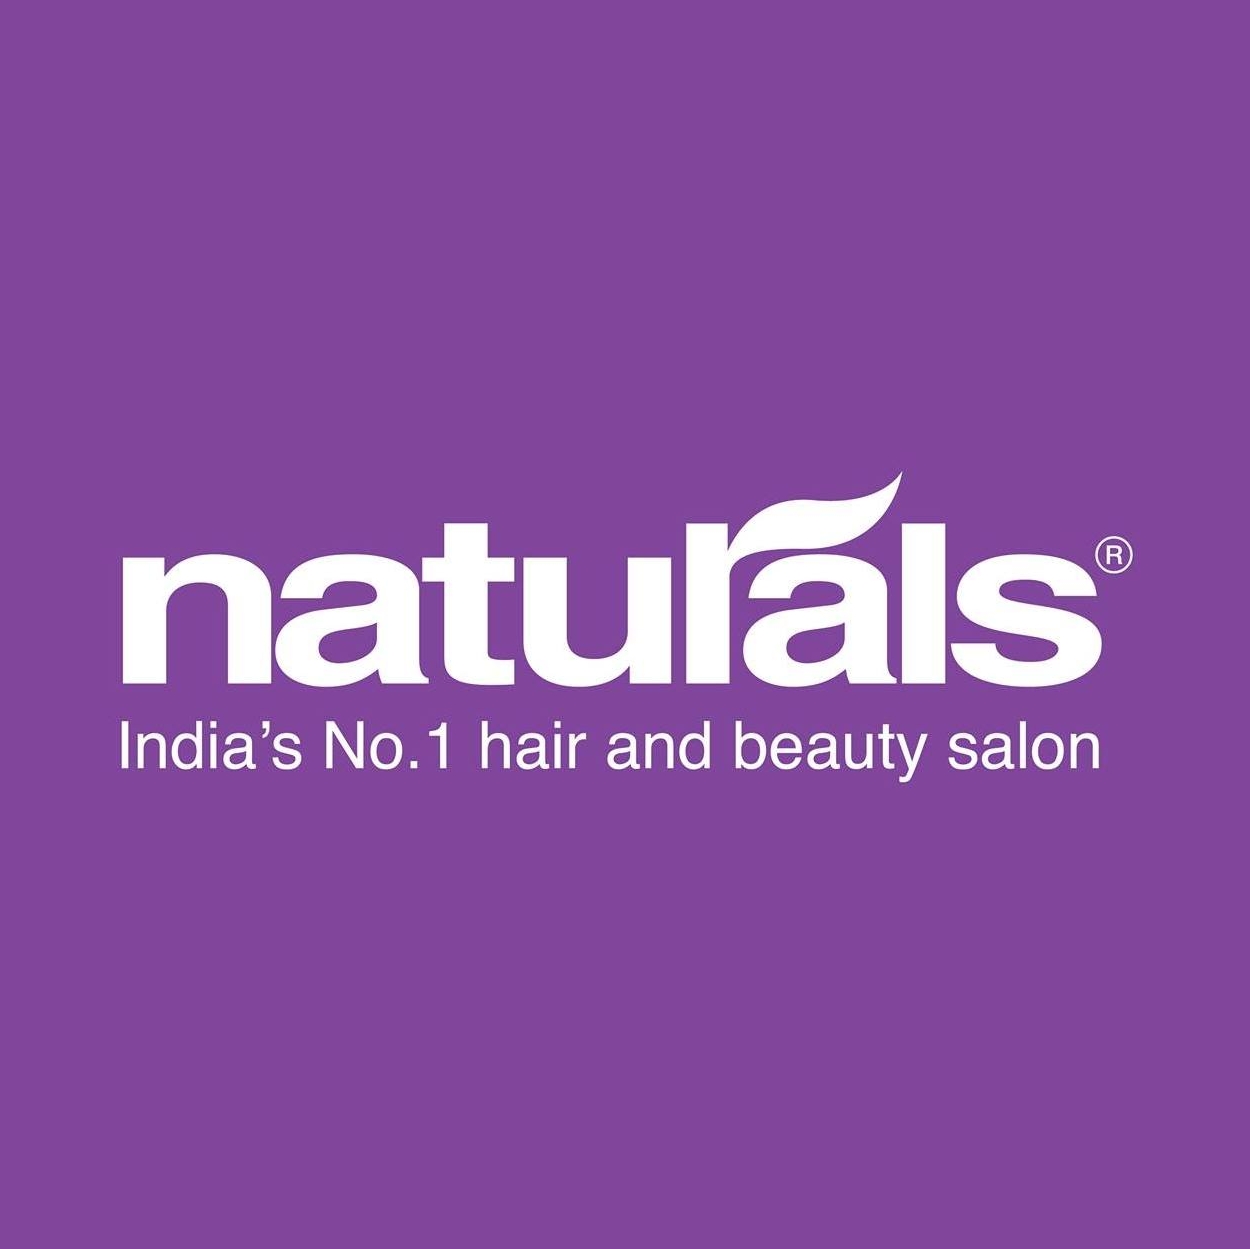 naturals logo